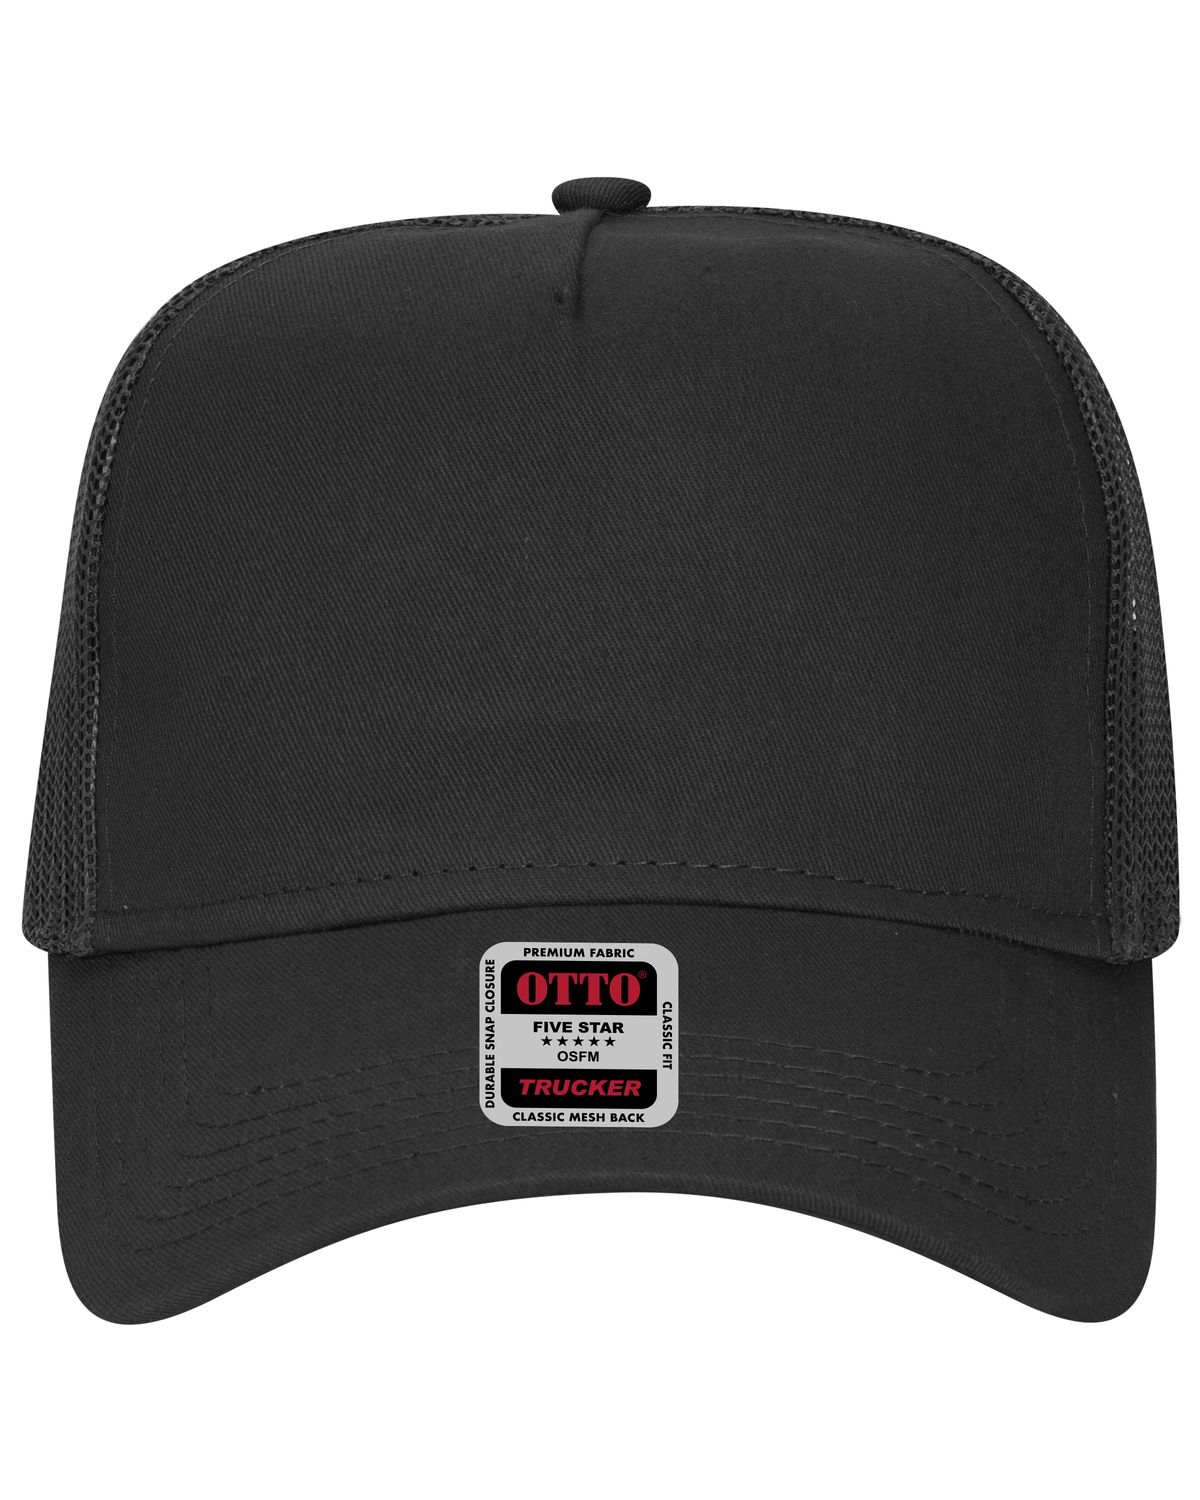 'OTTO 102 664 Otto cap 5 panel low profile mesh back trucker hat'